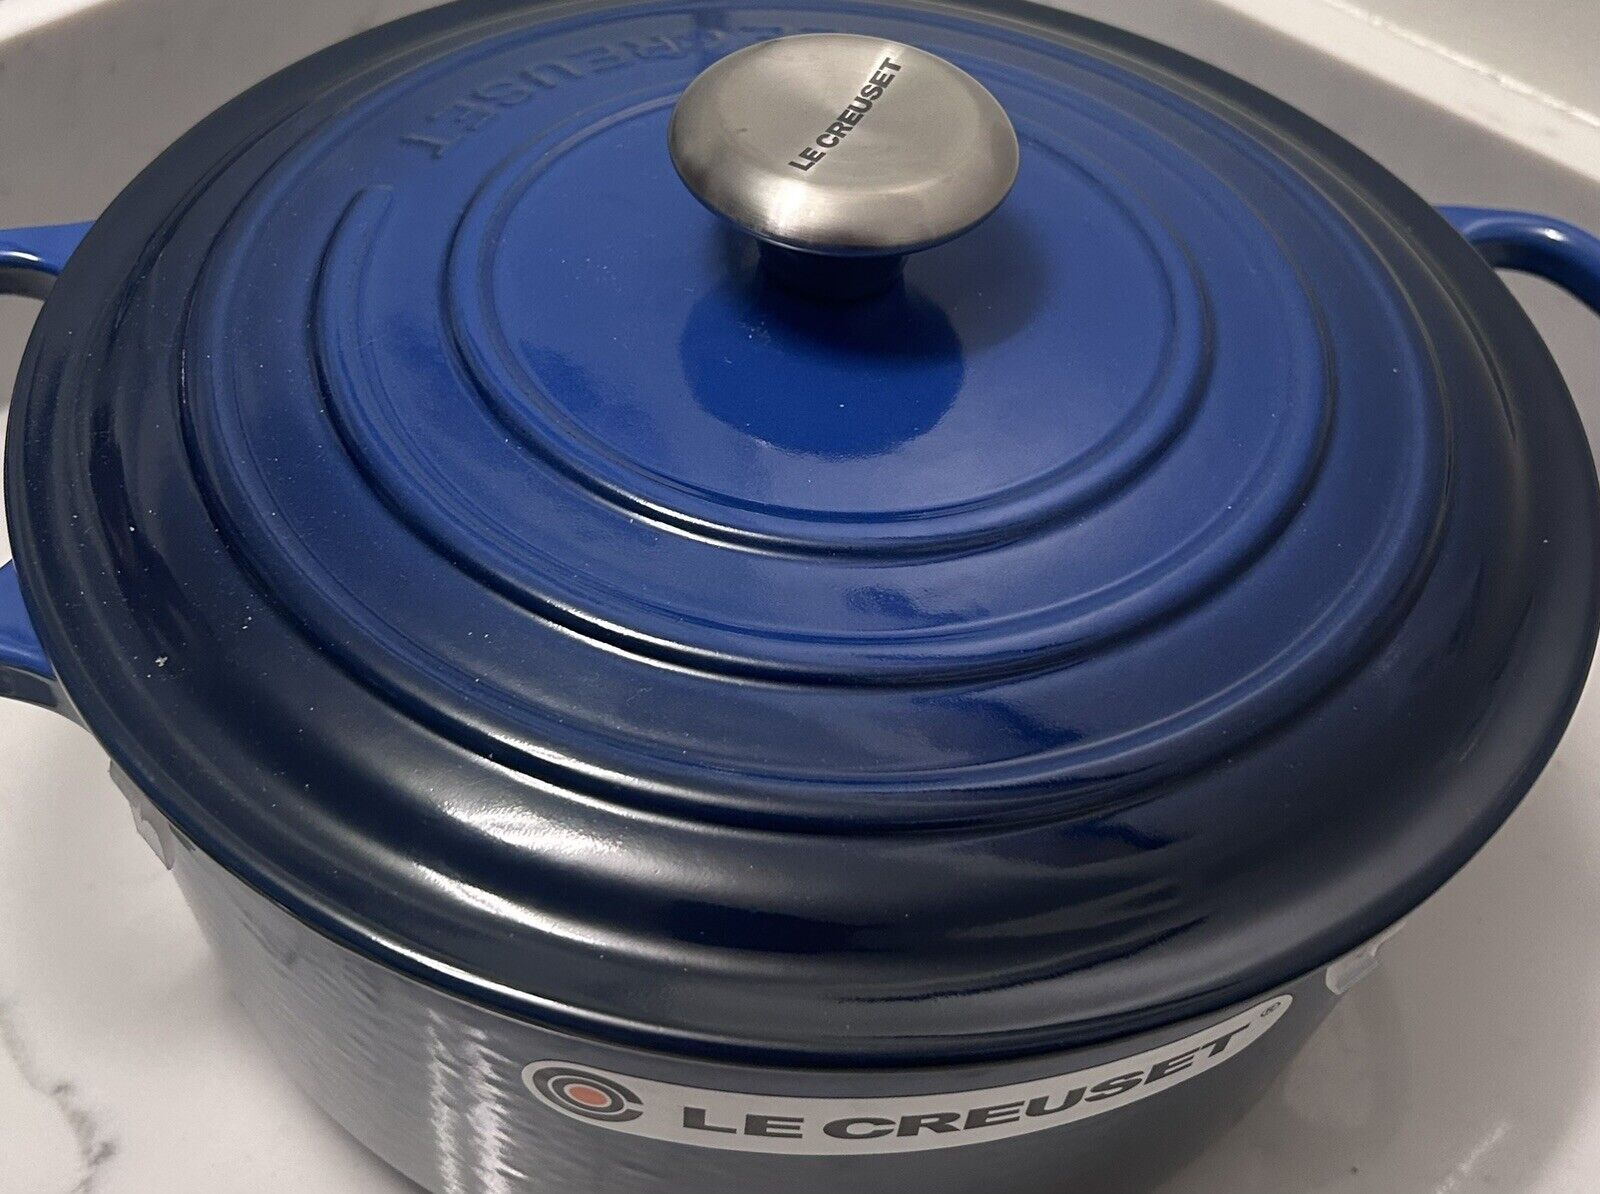 Le Creuset Enameled Cast Iron Signature Round Dutch Oven, 5.5 qt., Lapis Blue